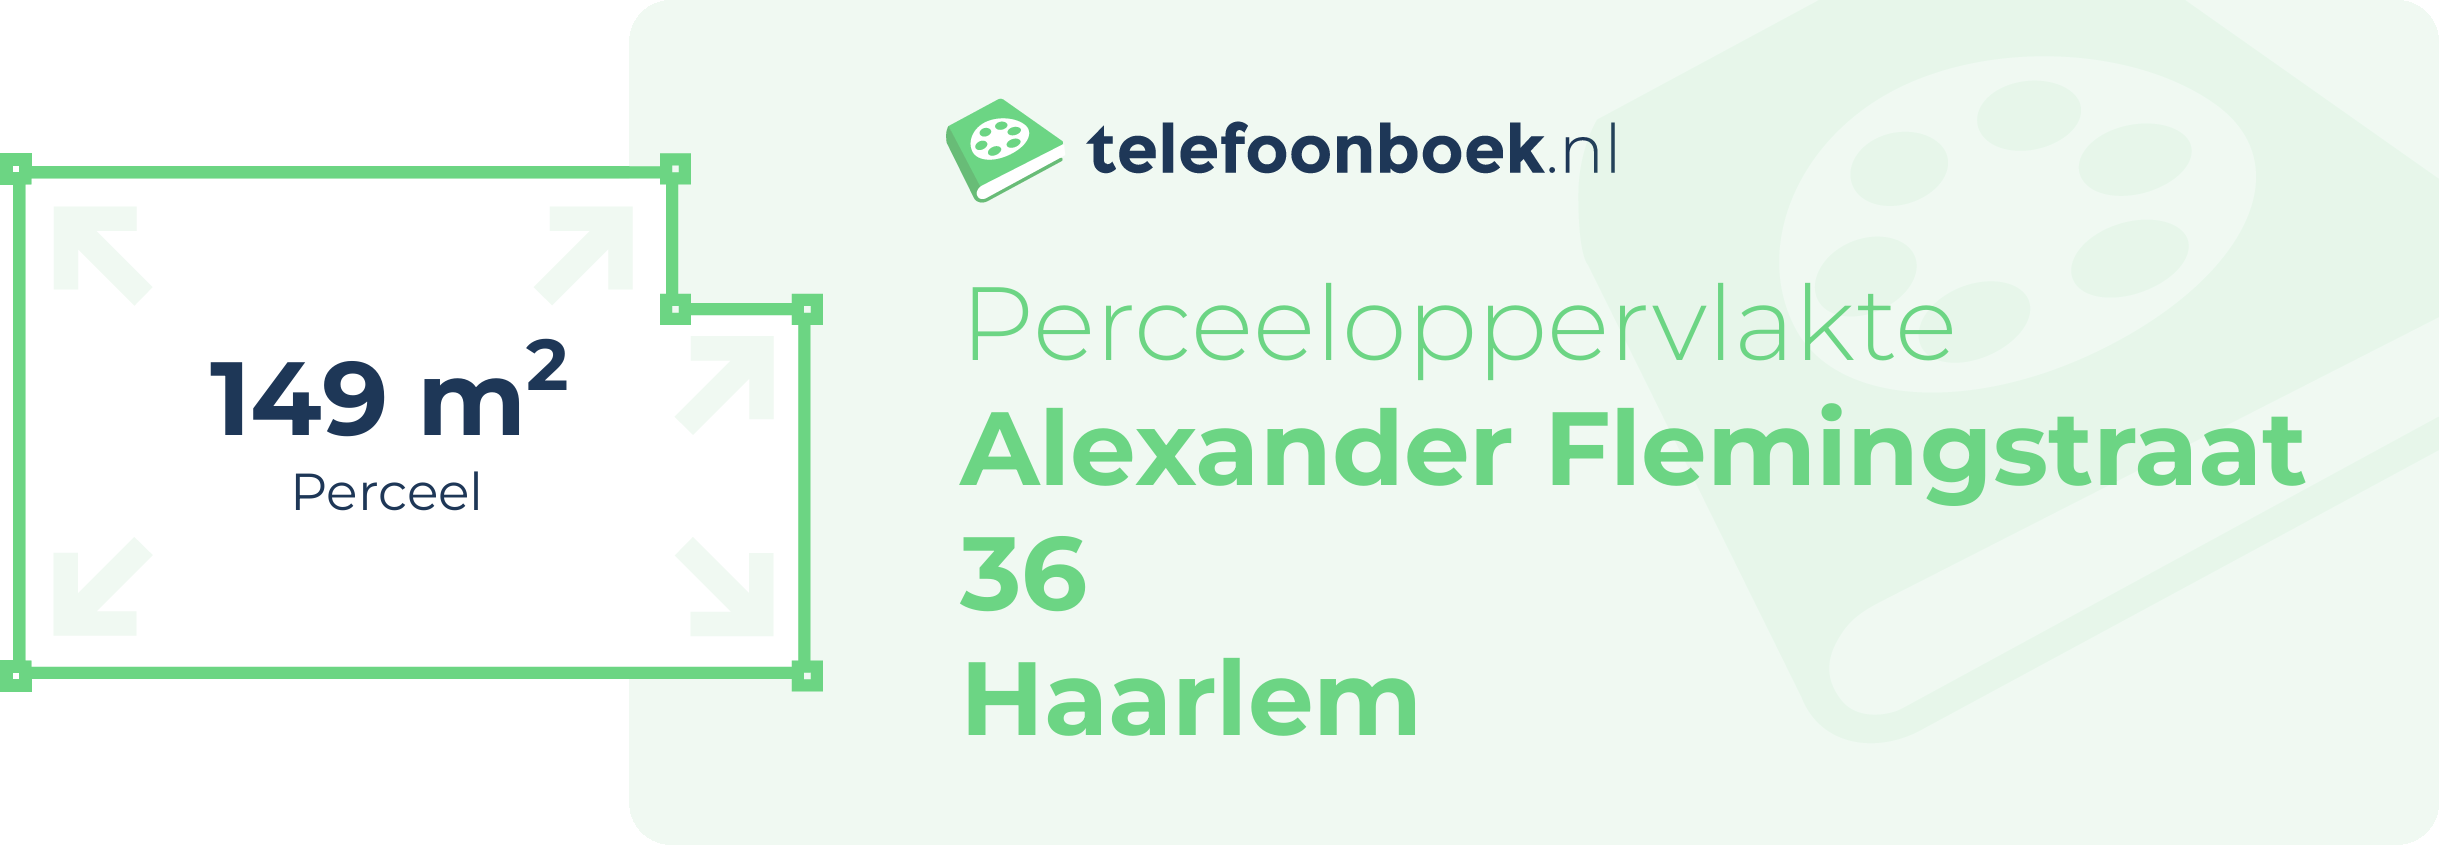 Perceeloppervlakte Alexander Flemingstraat 36 Haarlem